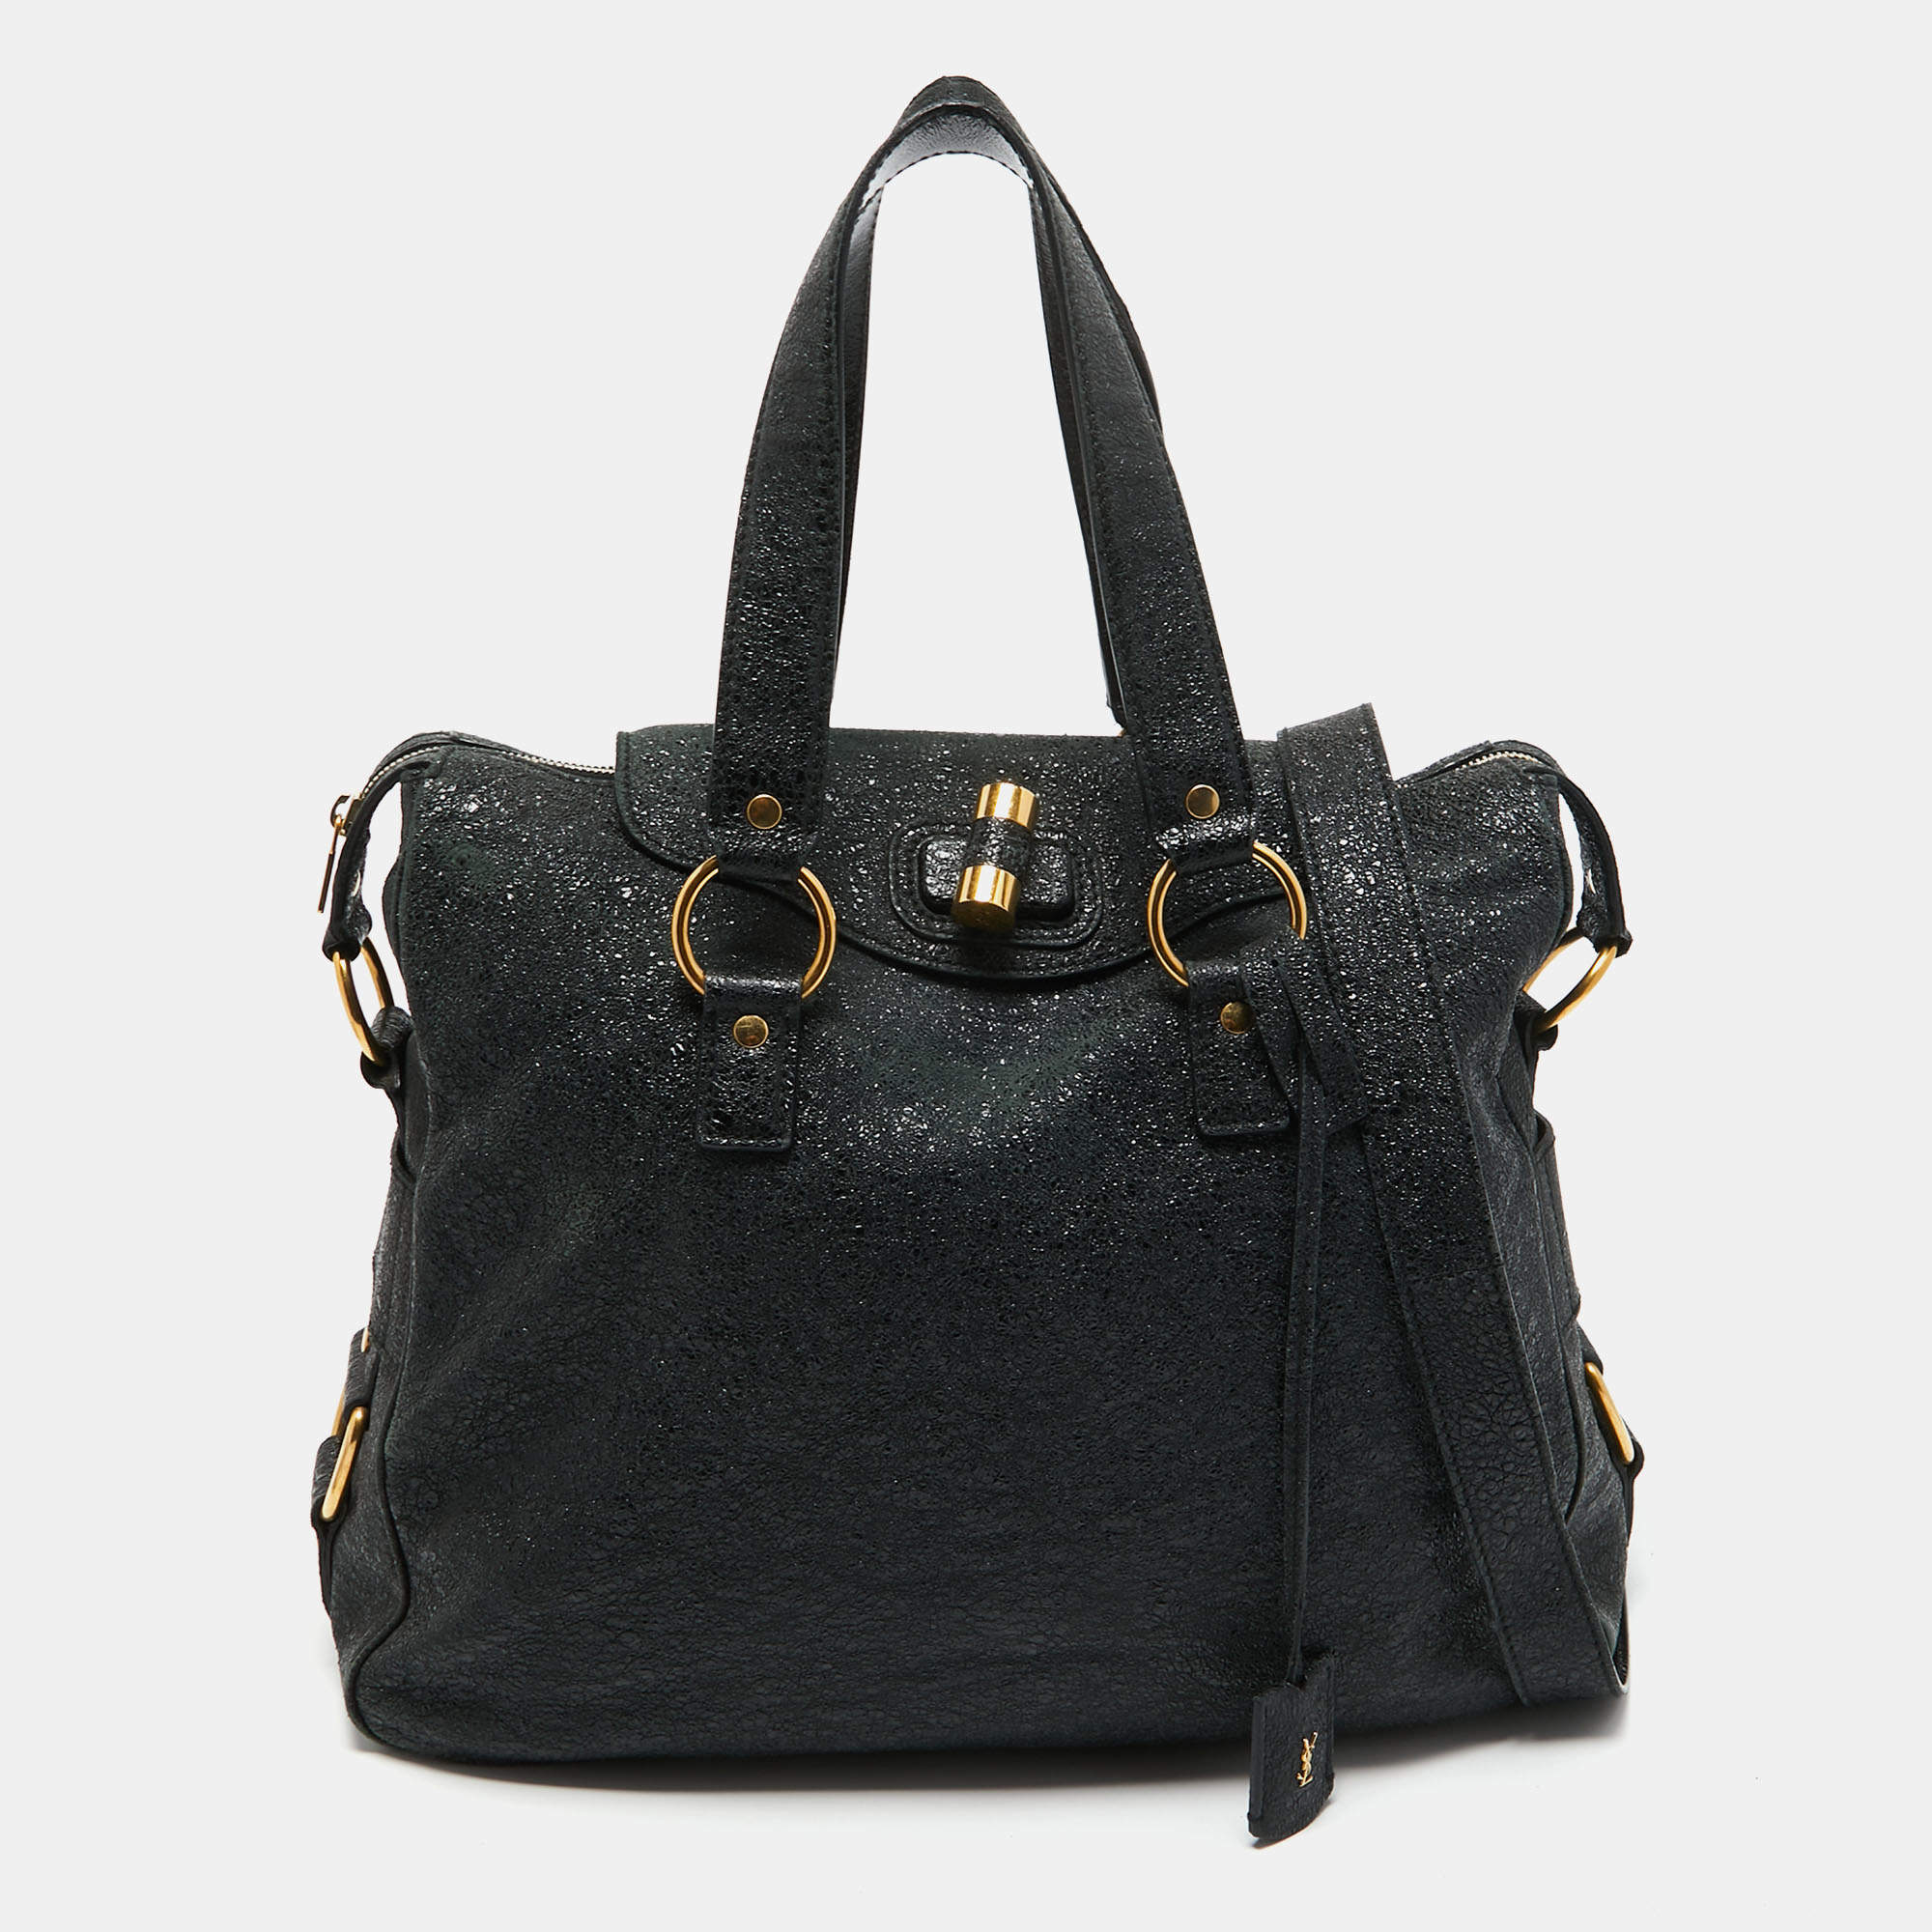 Used in Japan Bag] Saint Laurent Tote Bag Handbag Rive Gauche Muse